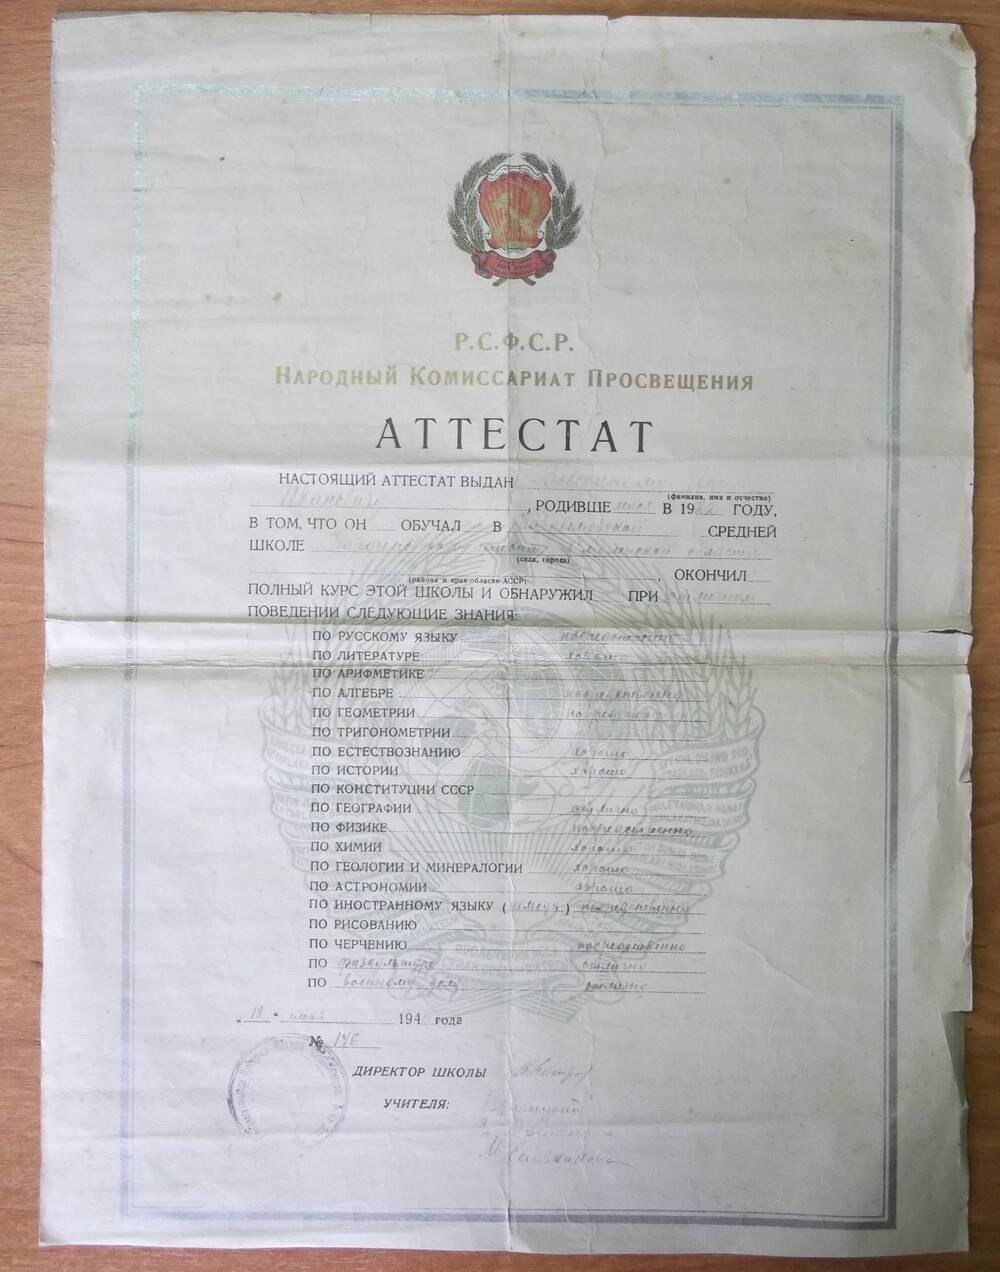 Аттестат Высоцкого Ивана Ивановича от 18 июня 1940 года